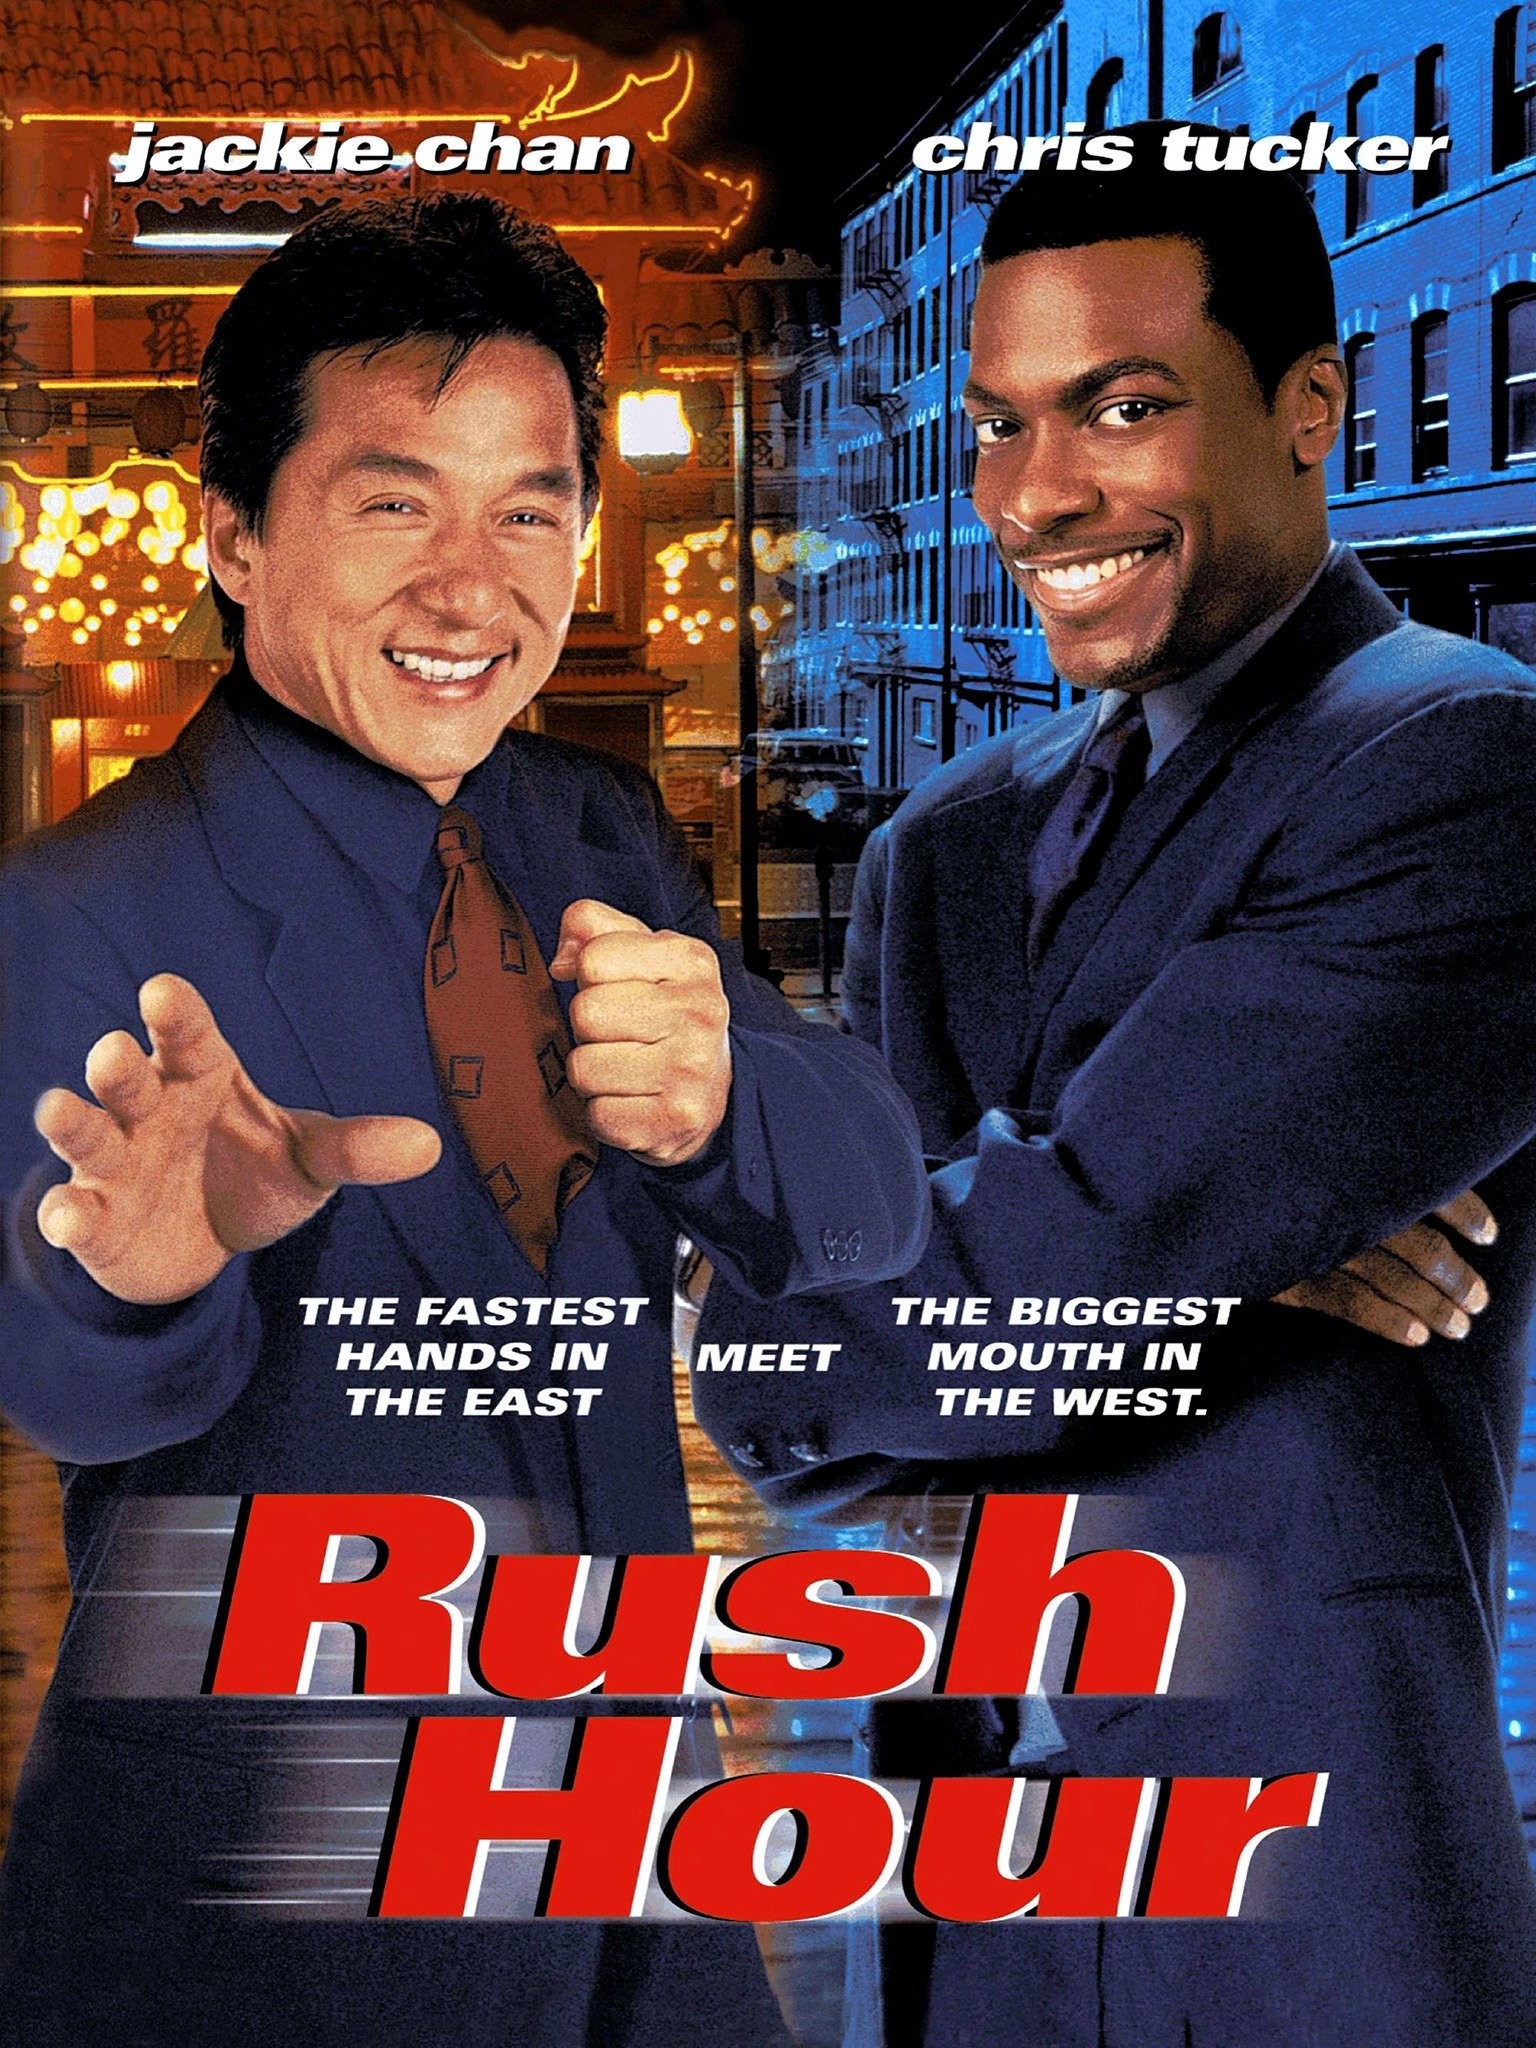 A Hora do Rush 4  Jackie Chan revela que filme está em